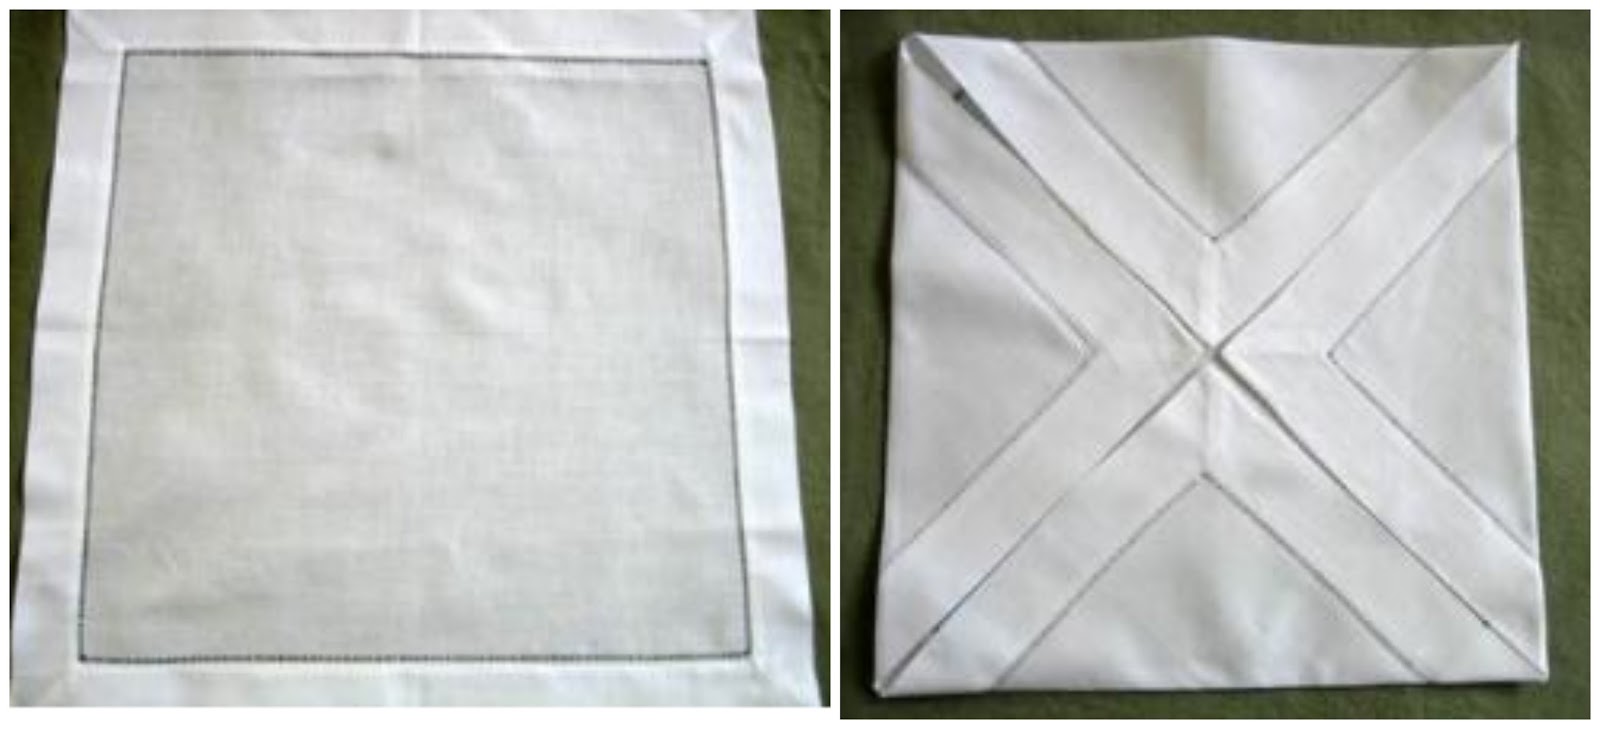 15 maneras decorativas de doblar servilletas de tela